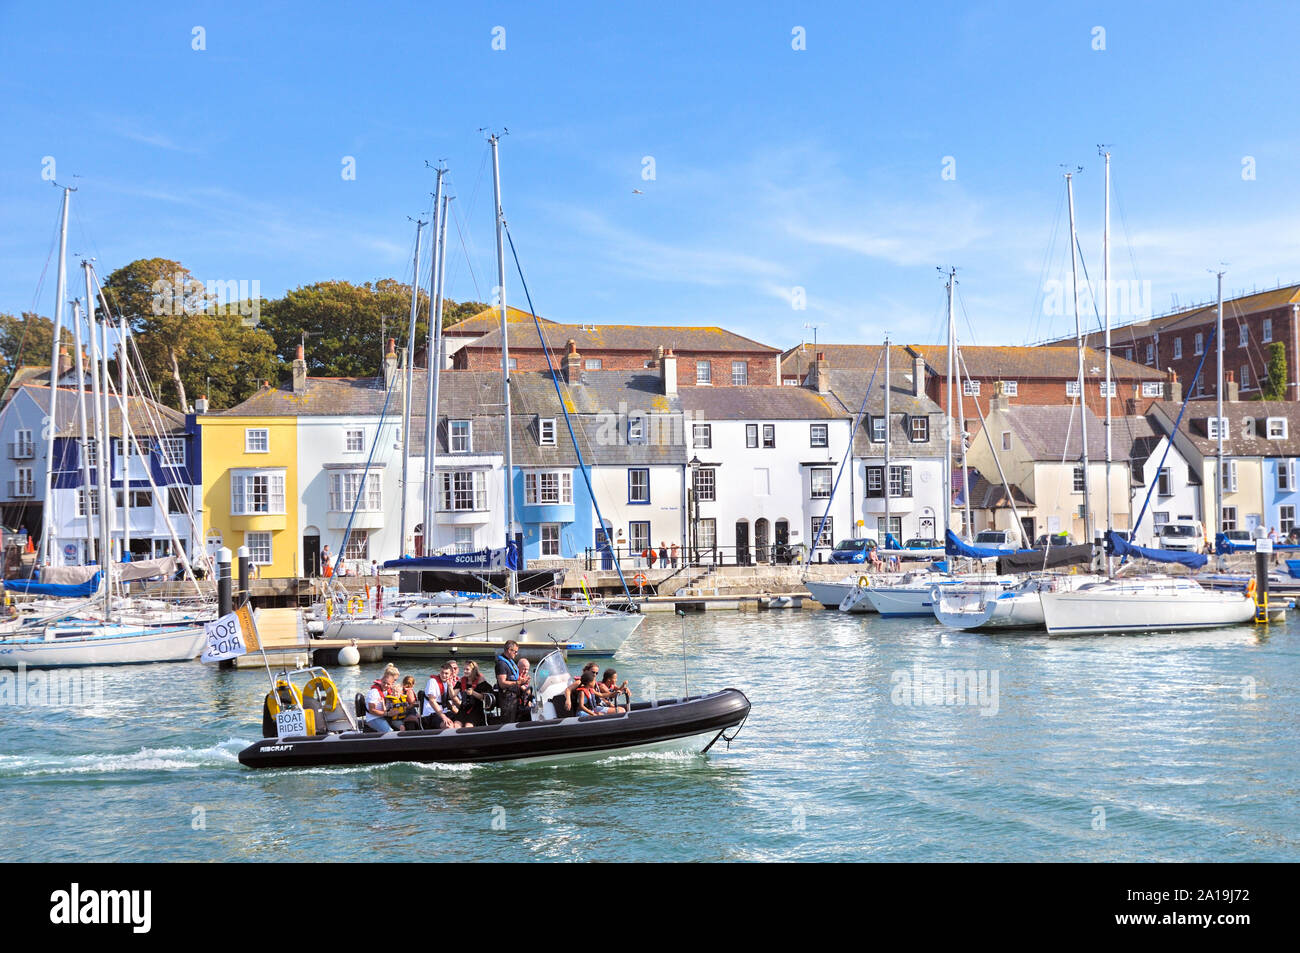 Los turistas en un viaje en barco de costilla en el viejo puerto pasando los yates y chalets adosados en Nothe Parade, Weymouth, la Costa Jurásica, en Dorset, Inglaterra, Reino Unido. Foto de stock